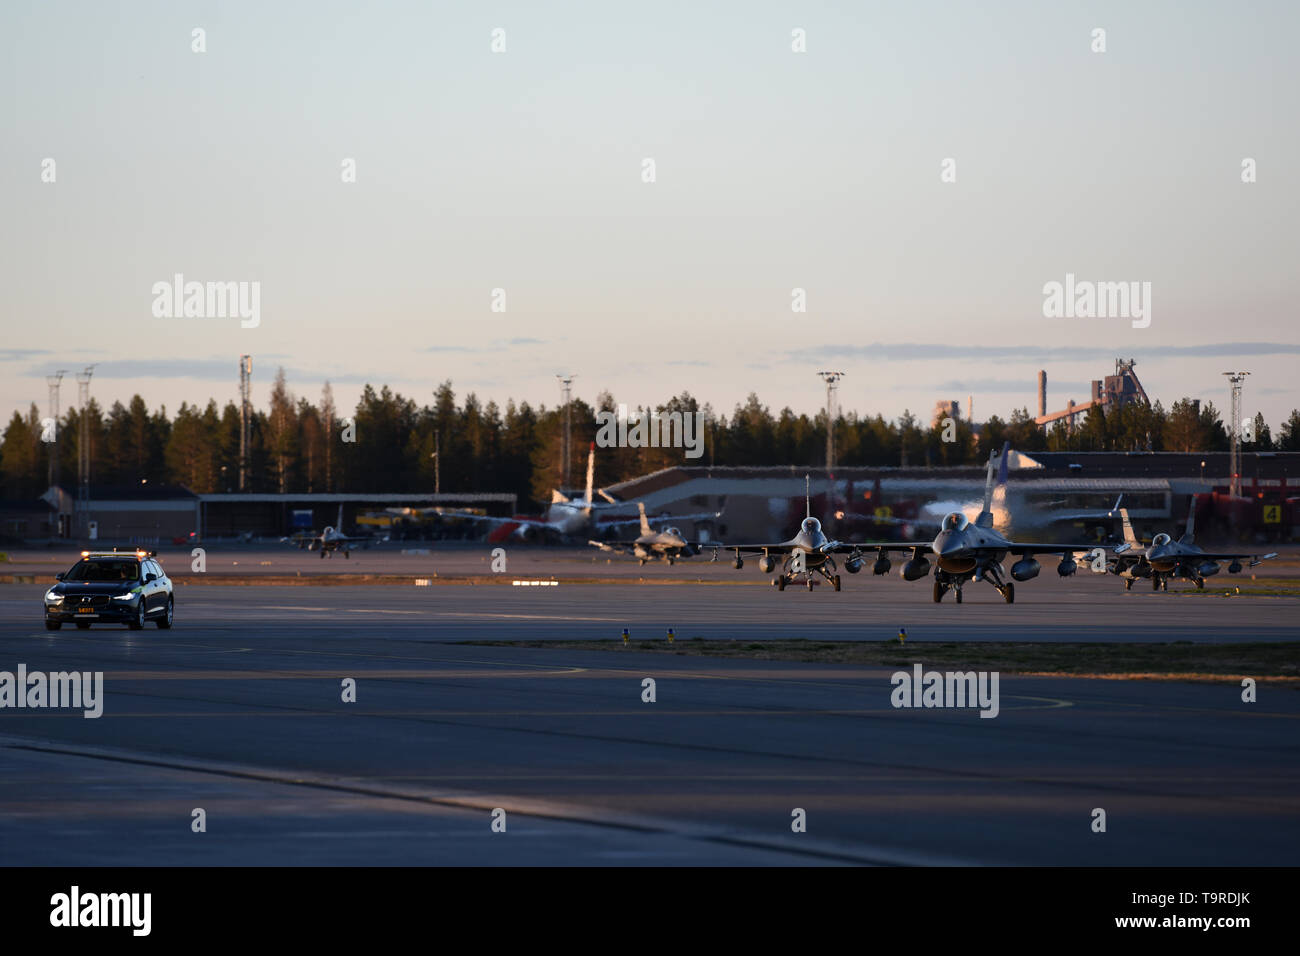 Us Air Force F-16C Block 52 Kampf gegen die Falken zu der 169th Air National Guard Fighter Wing von McEntire Joint National Guard Base, S.C. zugewiesen sind, kommen an Kallax Air Base, Luleå, Schweden, 16. Mai 2019 in Arctic Challenge Übung 2019 zu beteiligen. ACE19 ist ein Nordic Aviation übung, und dieses Jahr wird die Teilnahme von Schwedisch, Norwegisch, Dänisch, Finnisch, Französisch, Deutsch, Niederländisch, britischen und US-Streitkräften. Die US-Beteiligung, als Teil der Europäischen Initiative Abschreckung, zeigt, unerschütterliche Verpflichtung zu NATO-Verbündeten und Partnern in Europa bleiben entschlossenen Region Stockfoto